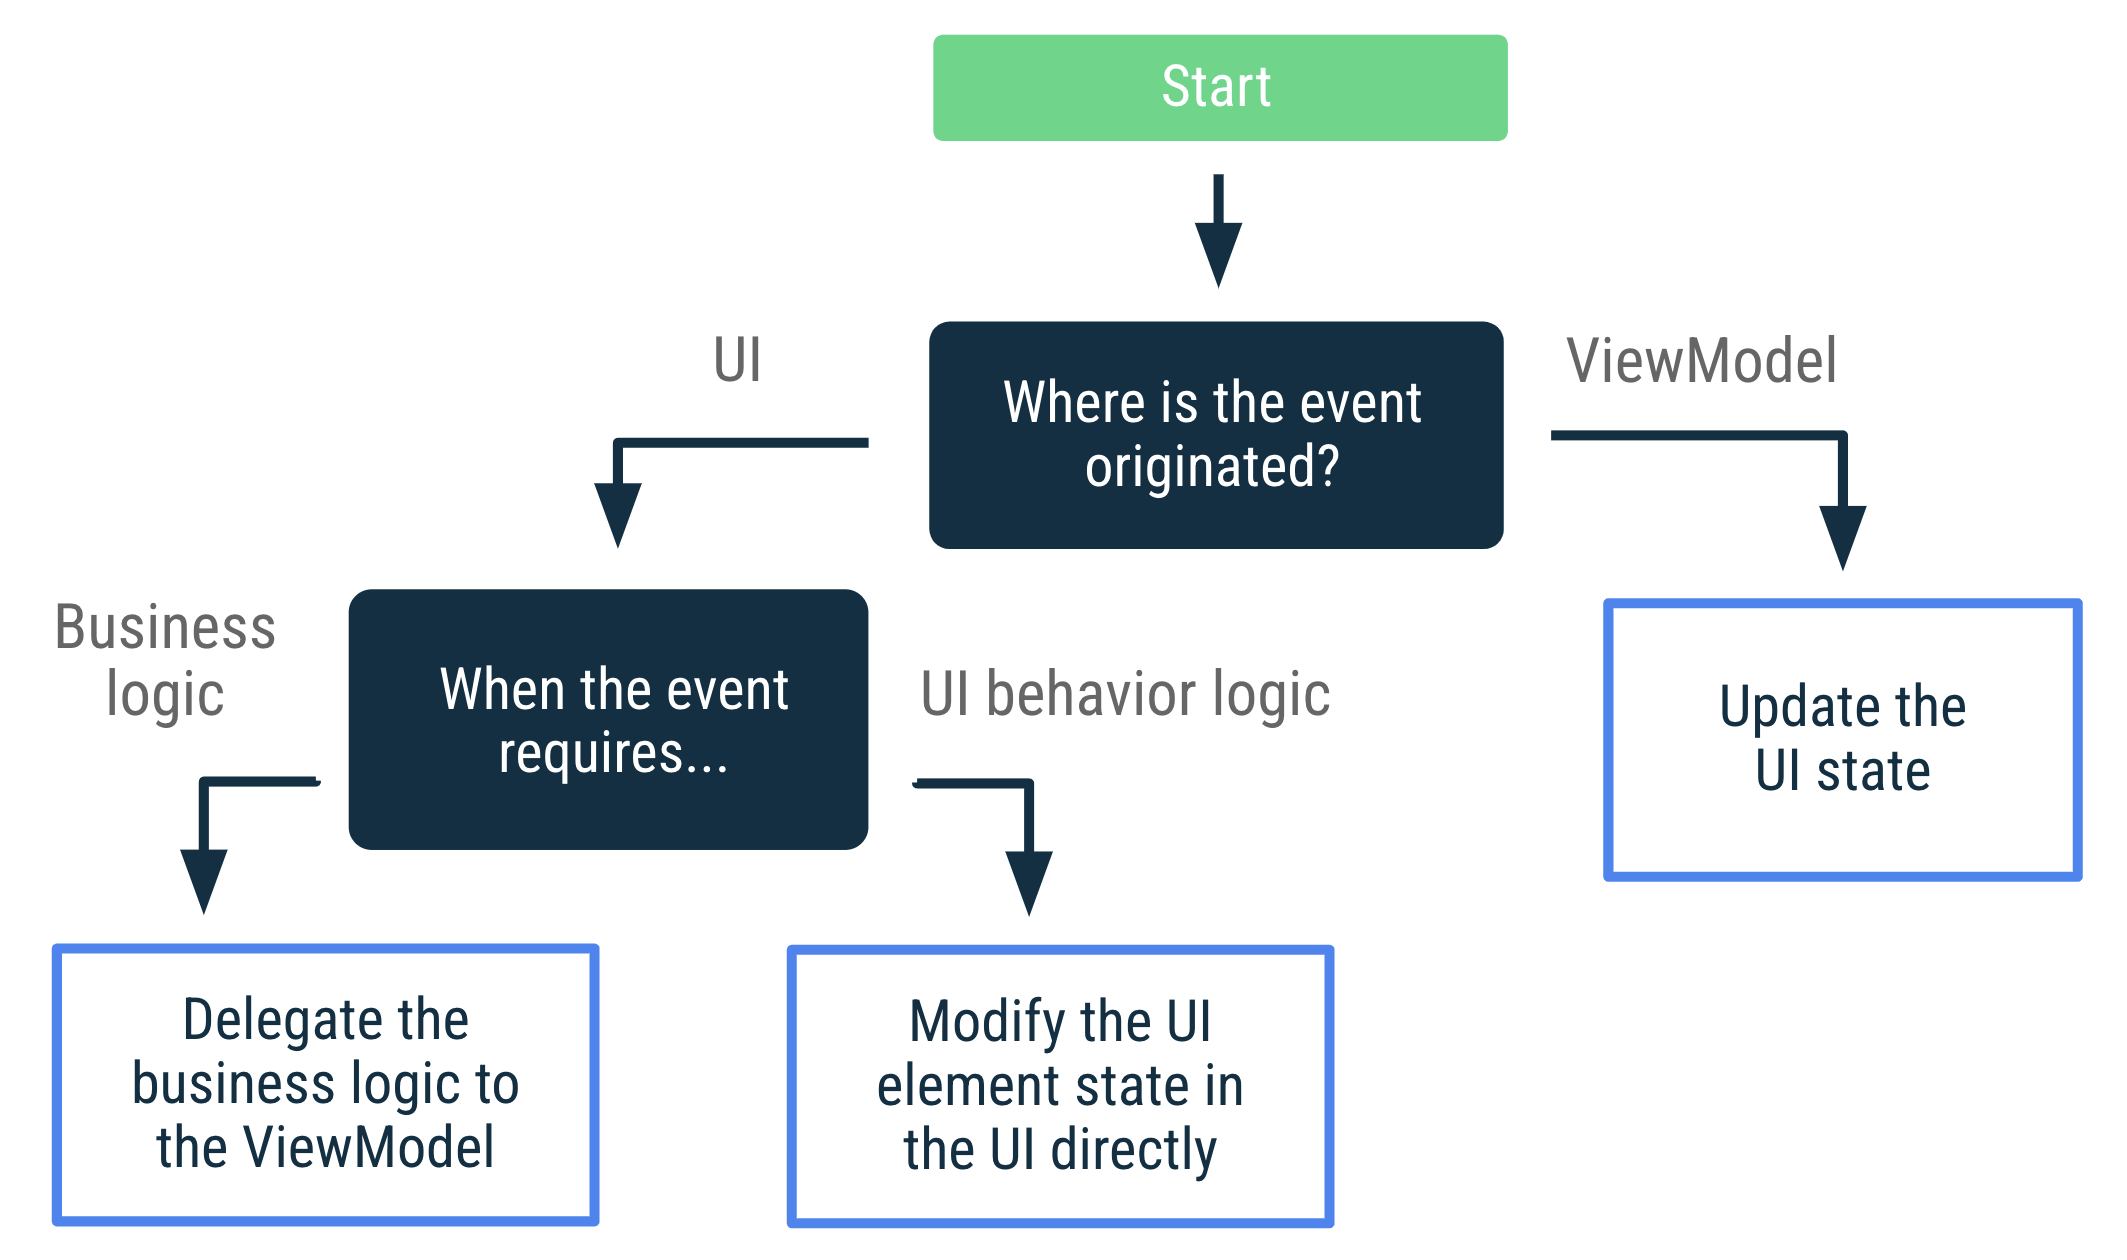 Si el evento se originó en ViewModel, actualiza el estado de la IU. Si el evento se originó en la IU y requiere lógica empresarial, debes delegar esa lógica a ViewModel. Si el evento se originó en la IU y requiere lógica de comportamiento de la IU, modifica el estado del elemento de la IU directamente en ella.